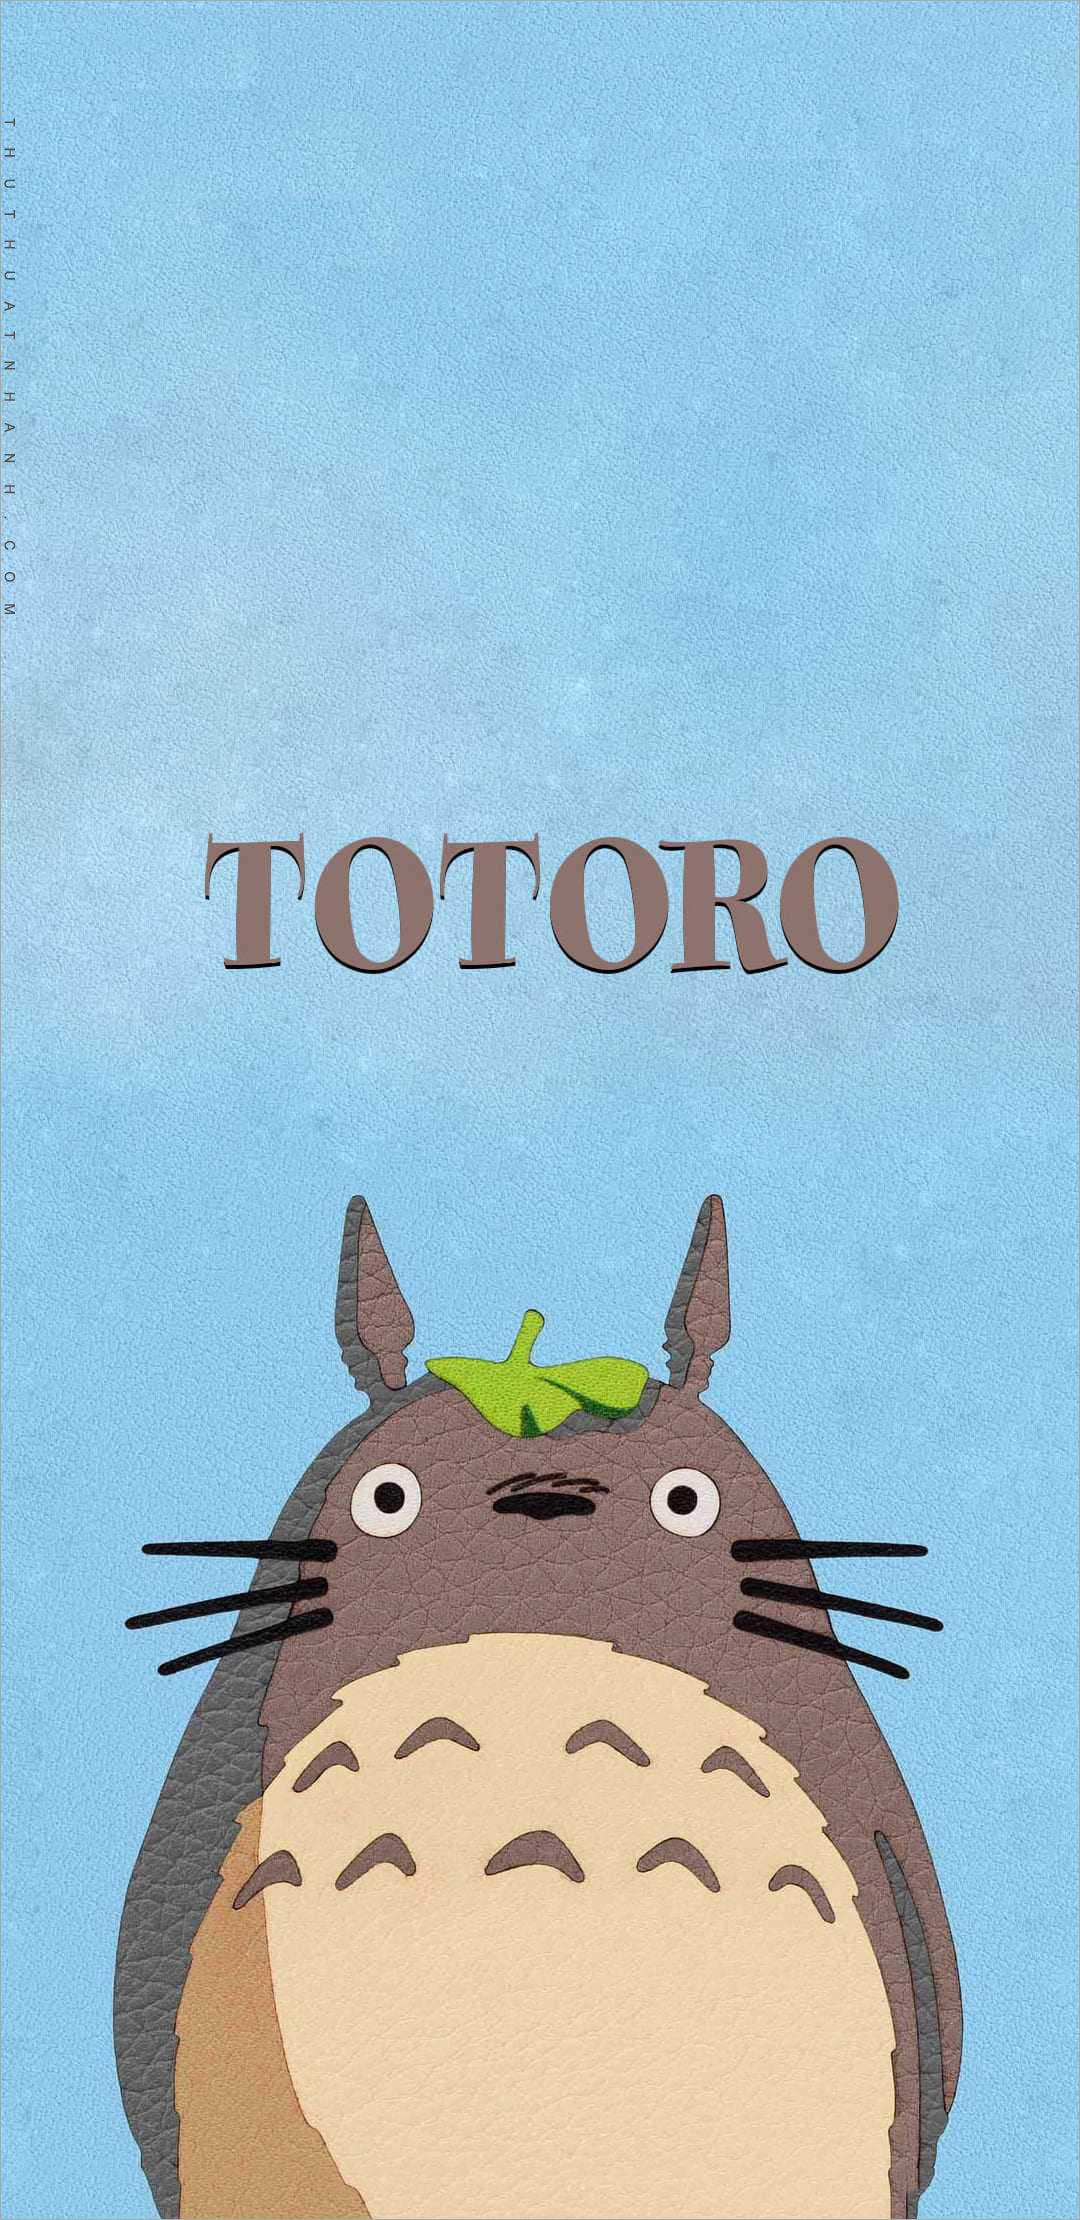 Xem hơn 100 ảnh về hình vẽ totoro dễ thương  daotaonec